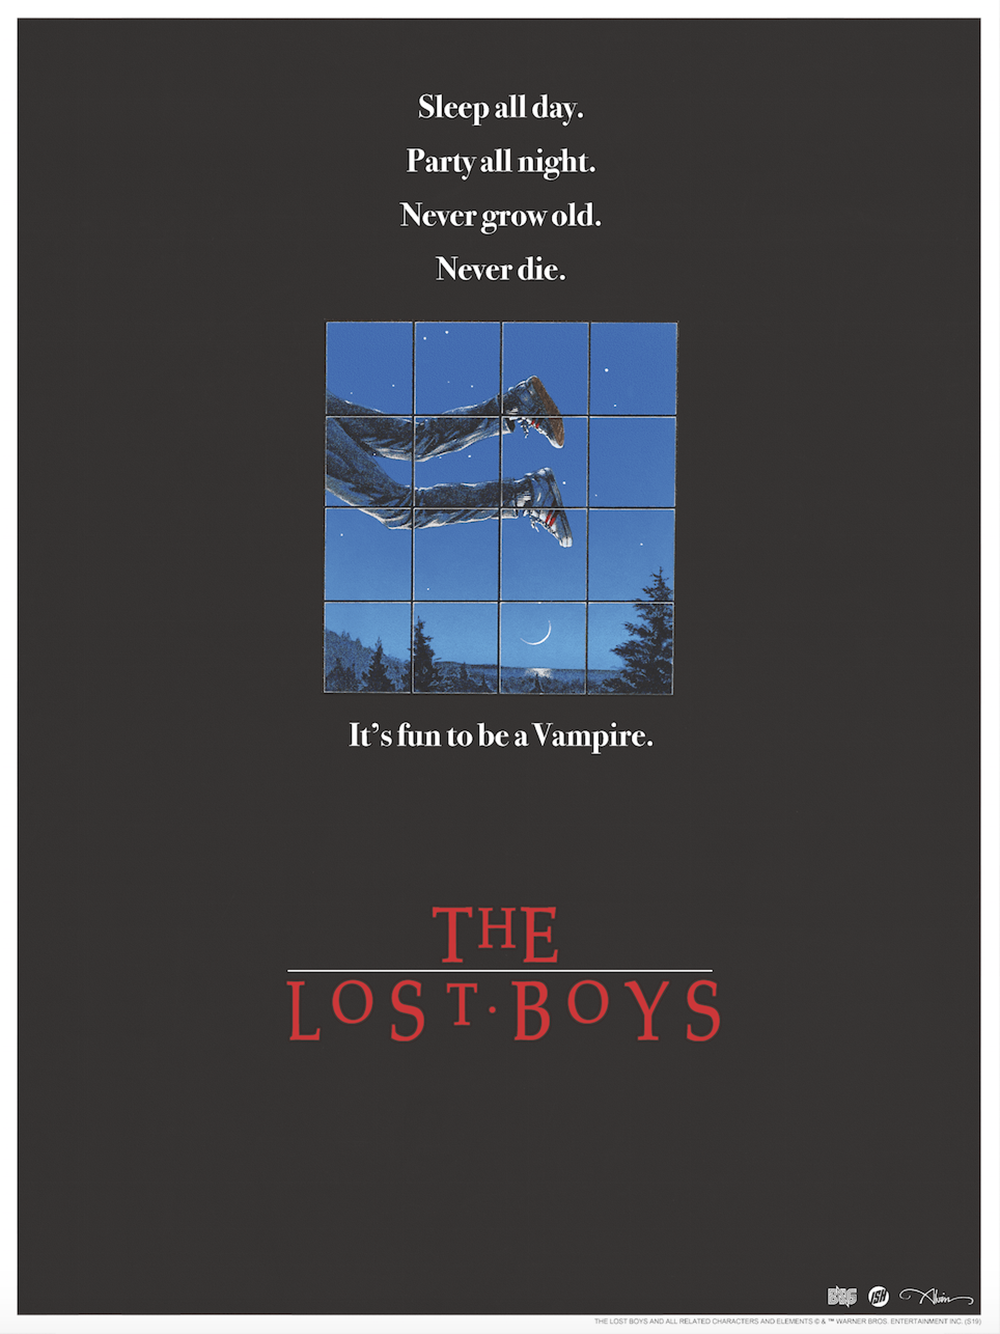 John Alvin "The Lost Boys - Teaser Poster"